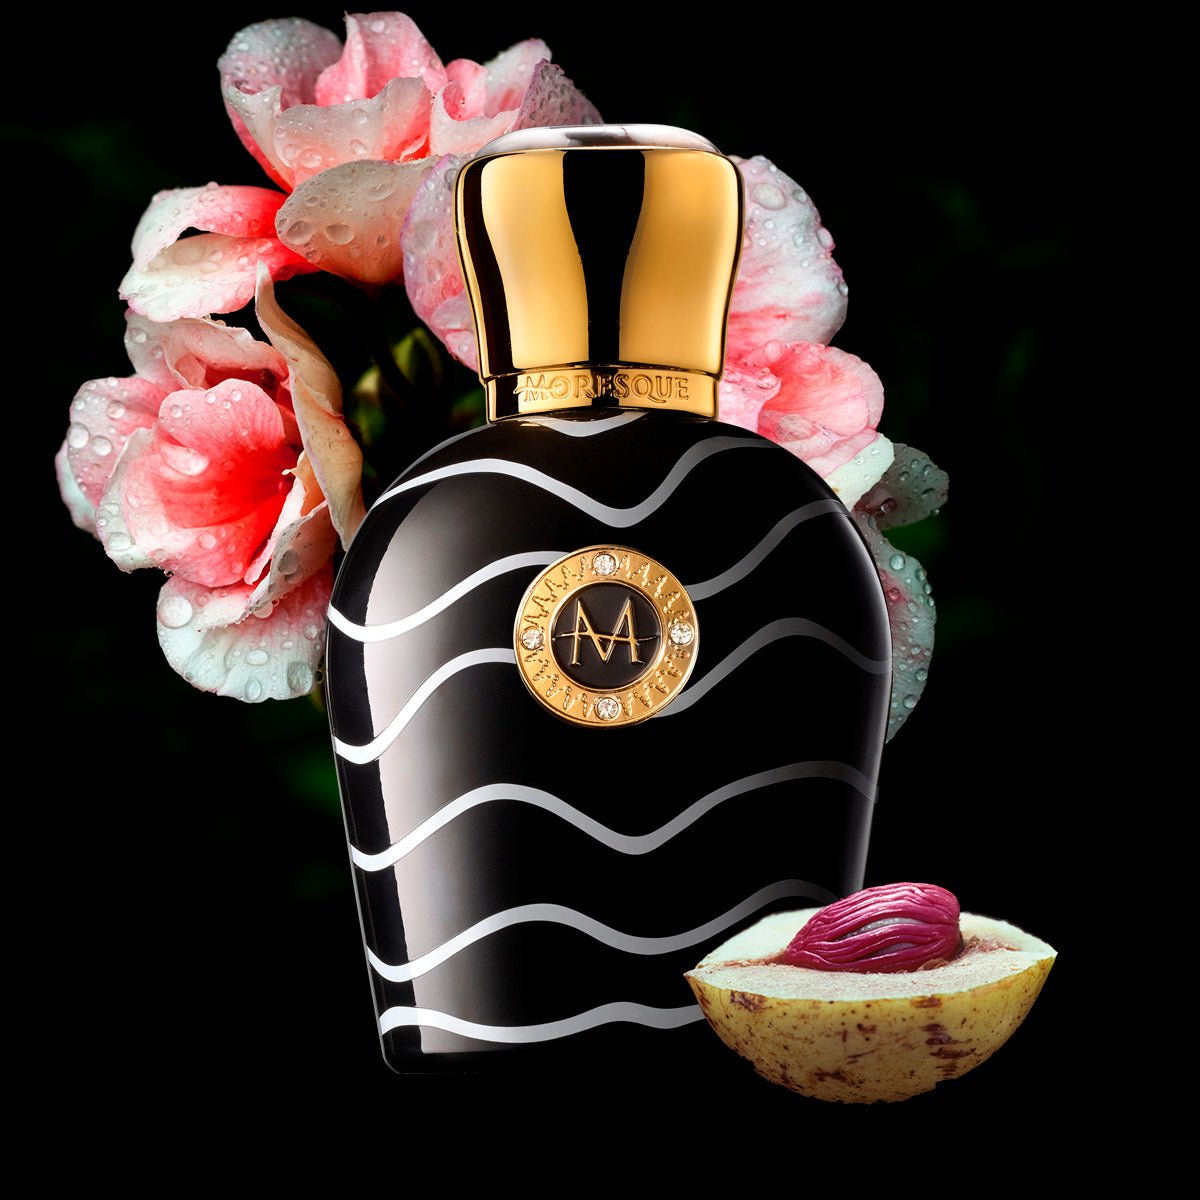 Moresque Parfums Aristoqrati Perfume & Cologne 1.7 oz/50 ml ScentRabbit